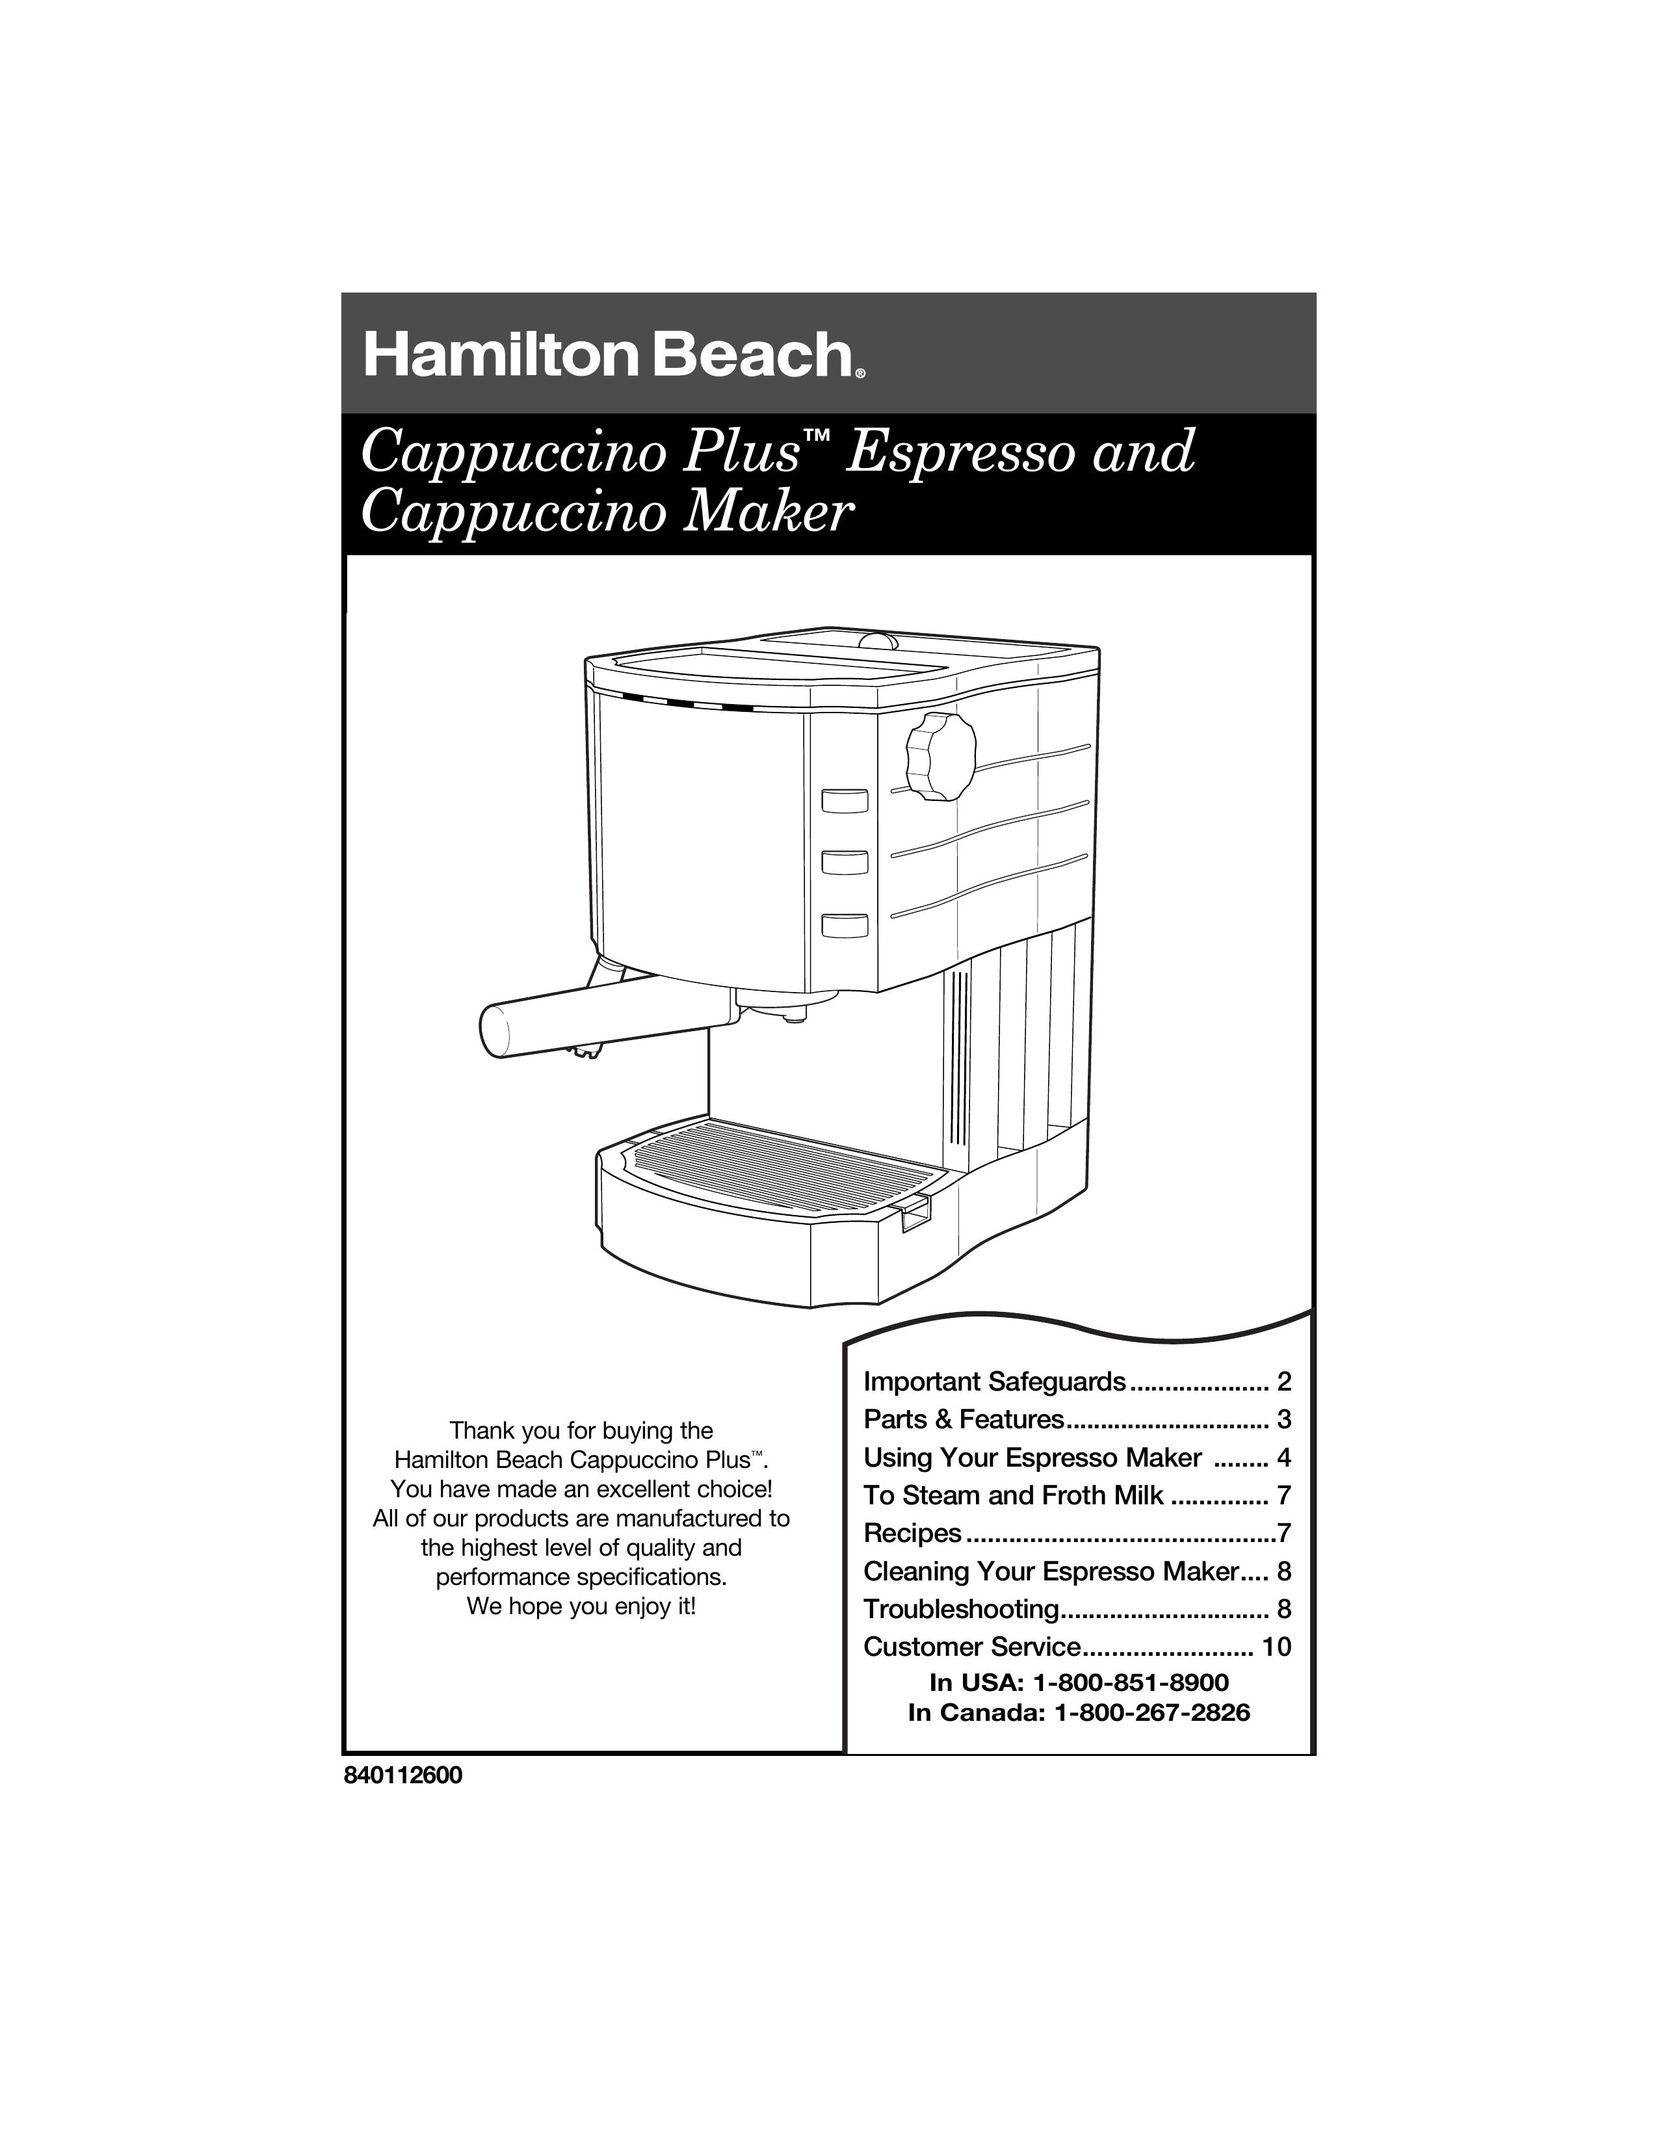 Hamilton Beach Cappuccino Plus Espresso Maker User Manual